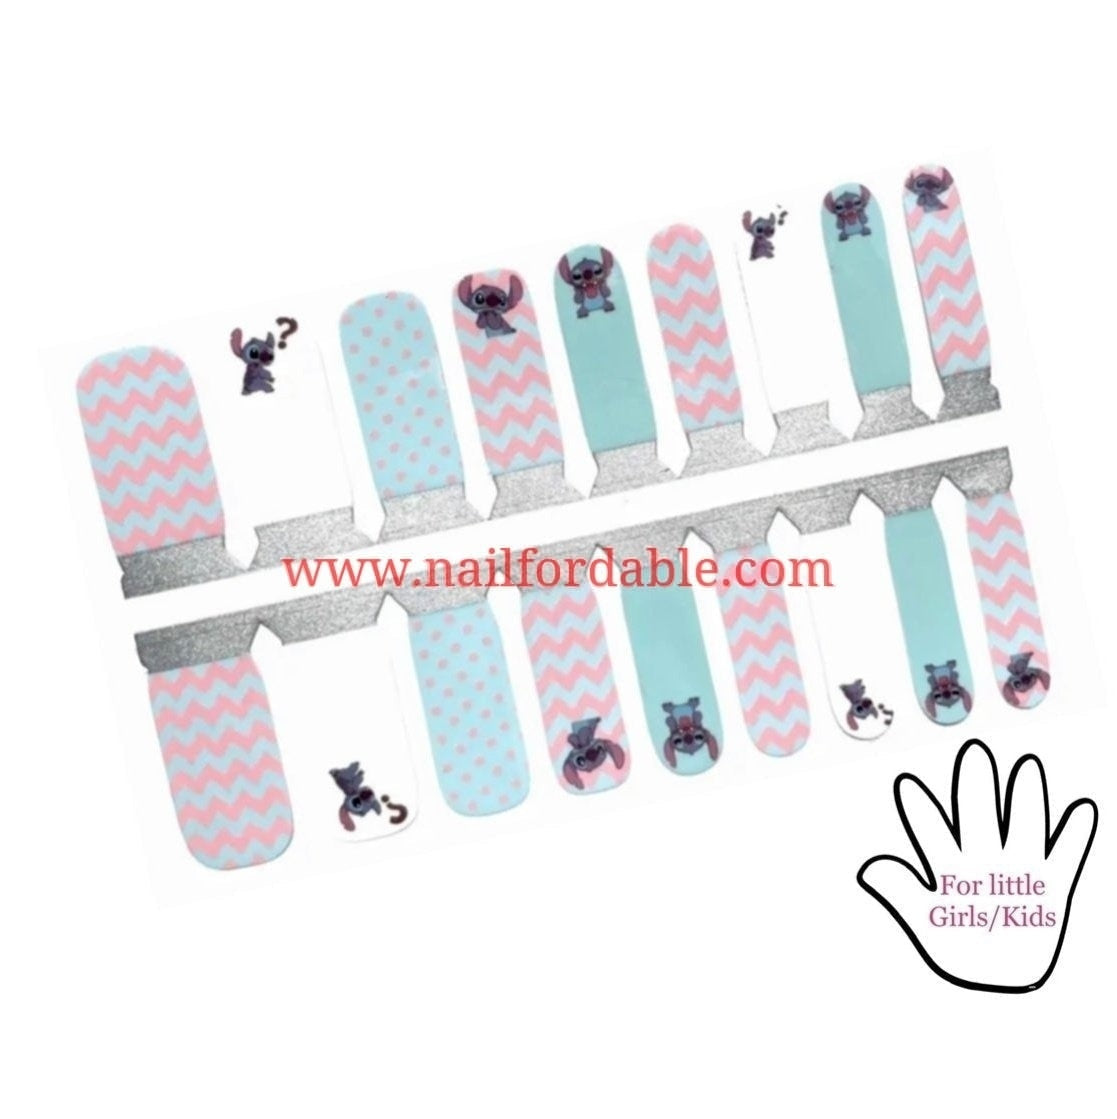 Lilo & Stitch Nail Wraps | Semi Cured Gel Wraps | Gel Nail Wraps |Nail Polish | Nail Stickers